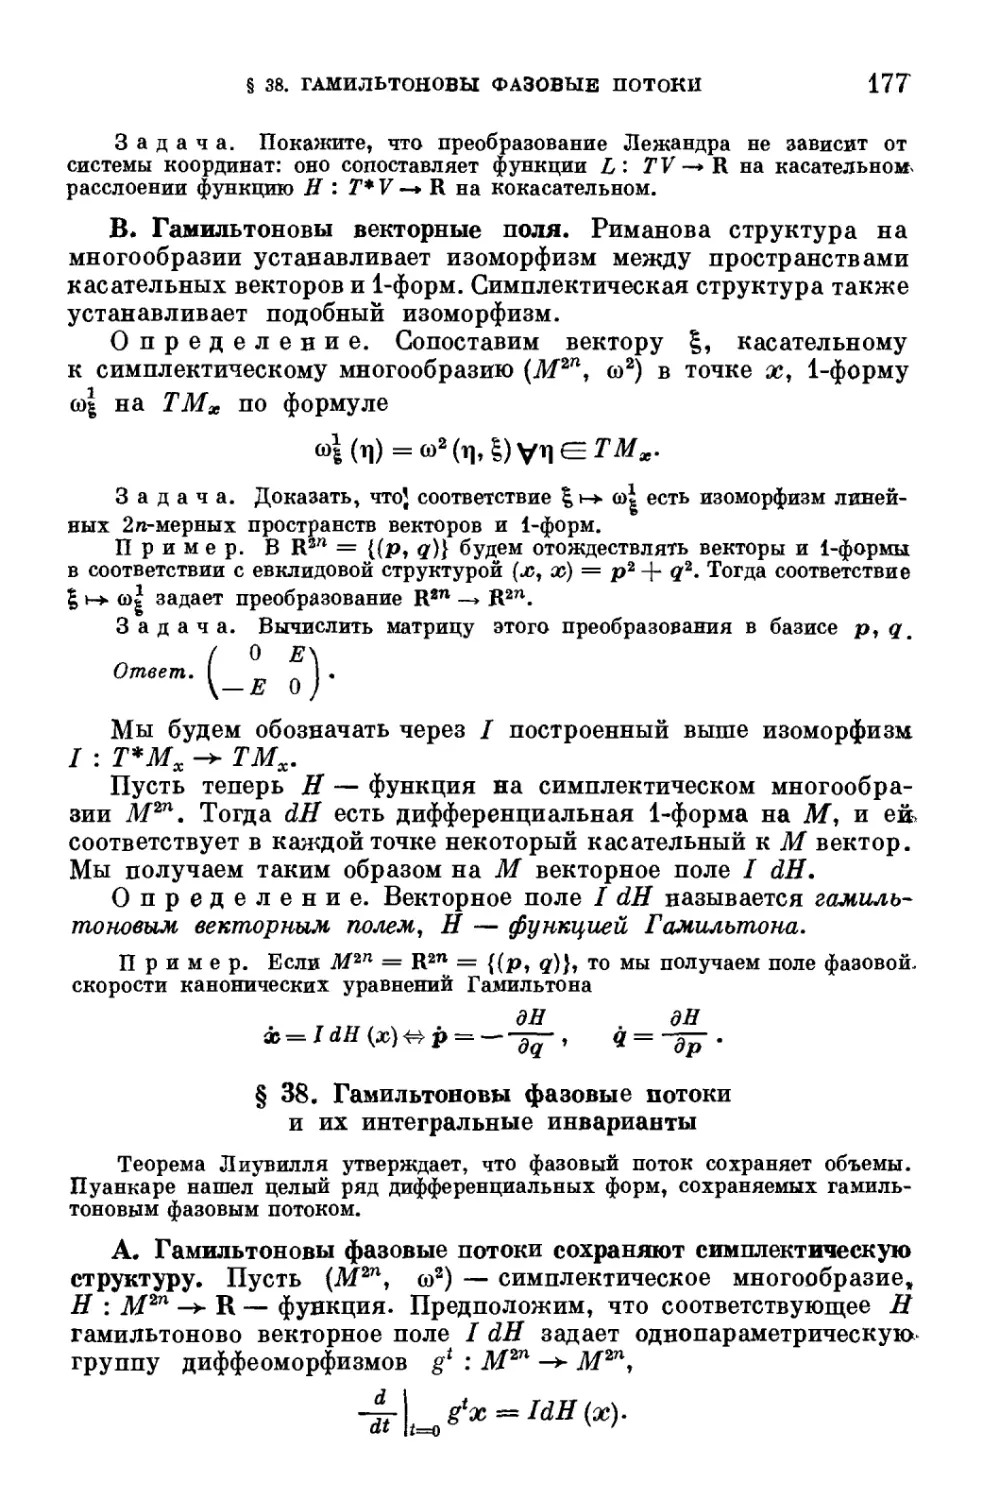 § 38. Гамильтоновы фазовые потоки и их интегральные инварианты